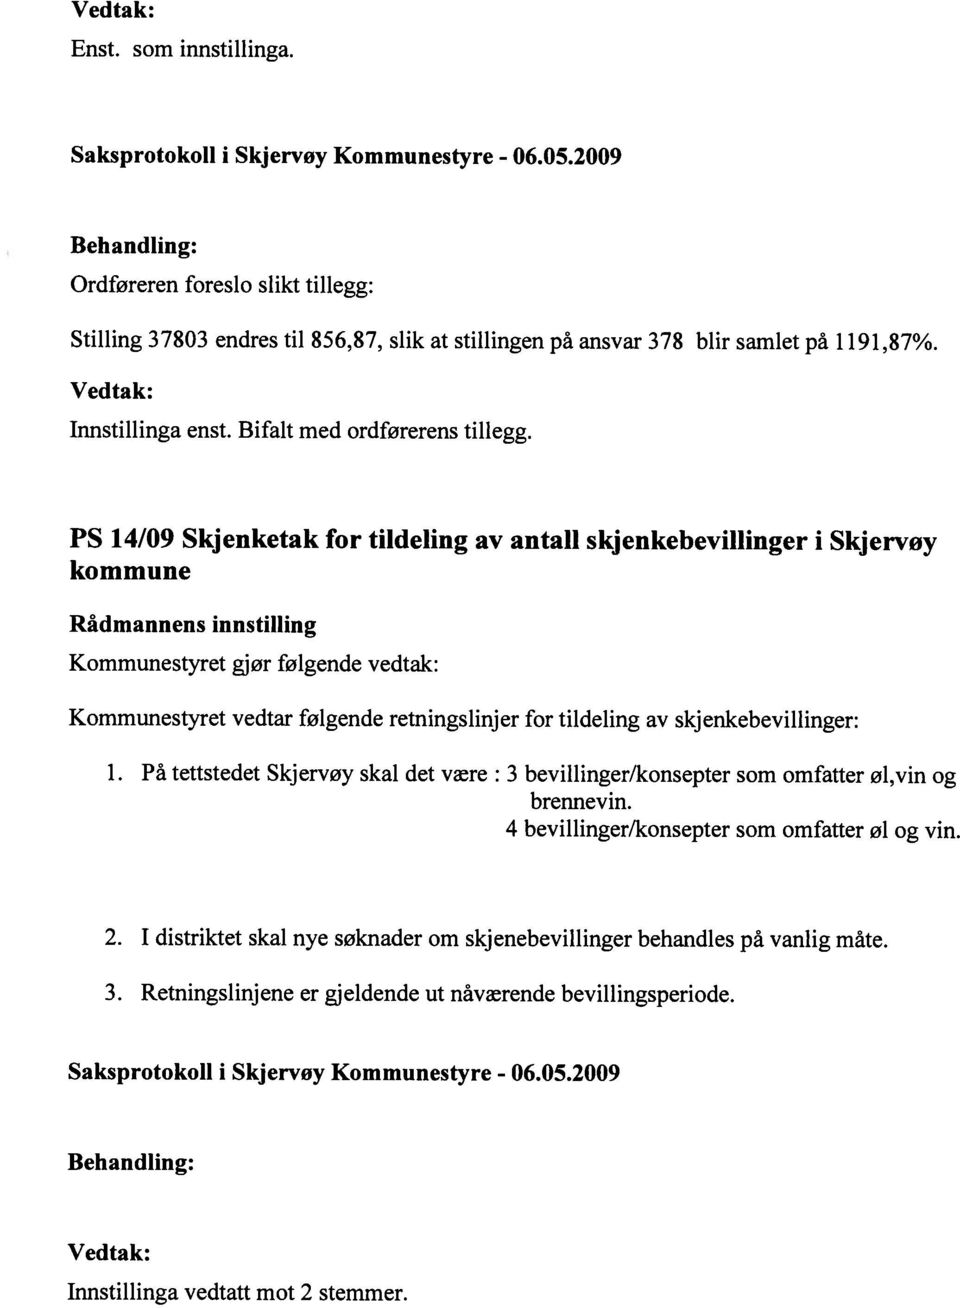 PS 14/09 Skjenketak for tildeling av antall skjenkebevillinger i Skjervøy kommune Kommunestyret gjør følgende vedtak: Kommunestyret vedtar følgende retningslinjer for tildeling av